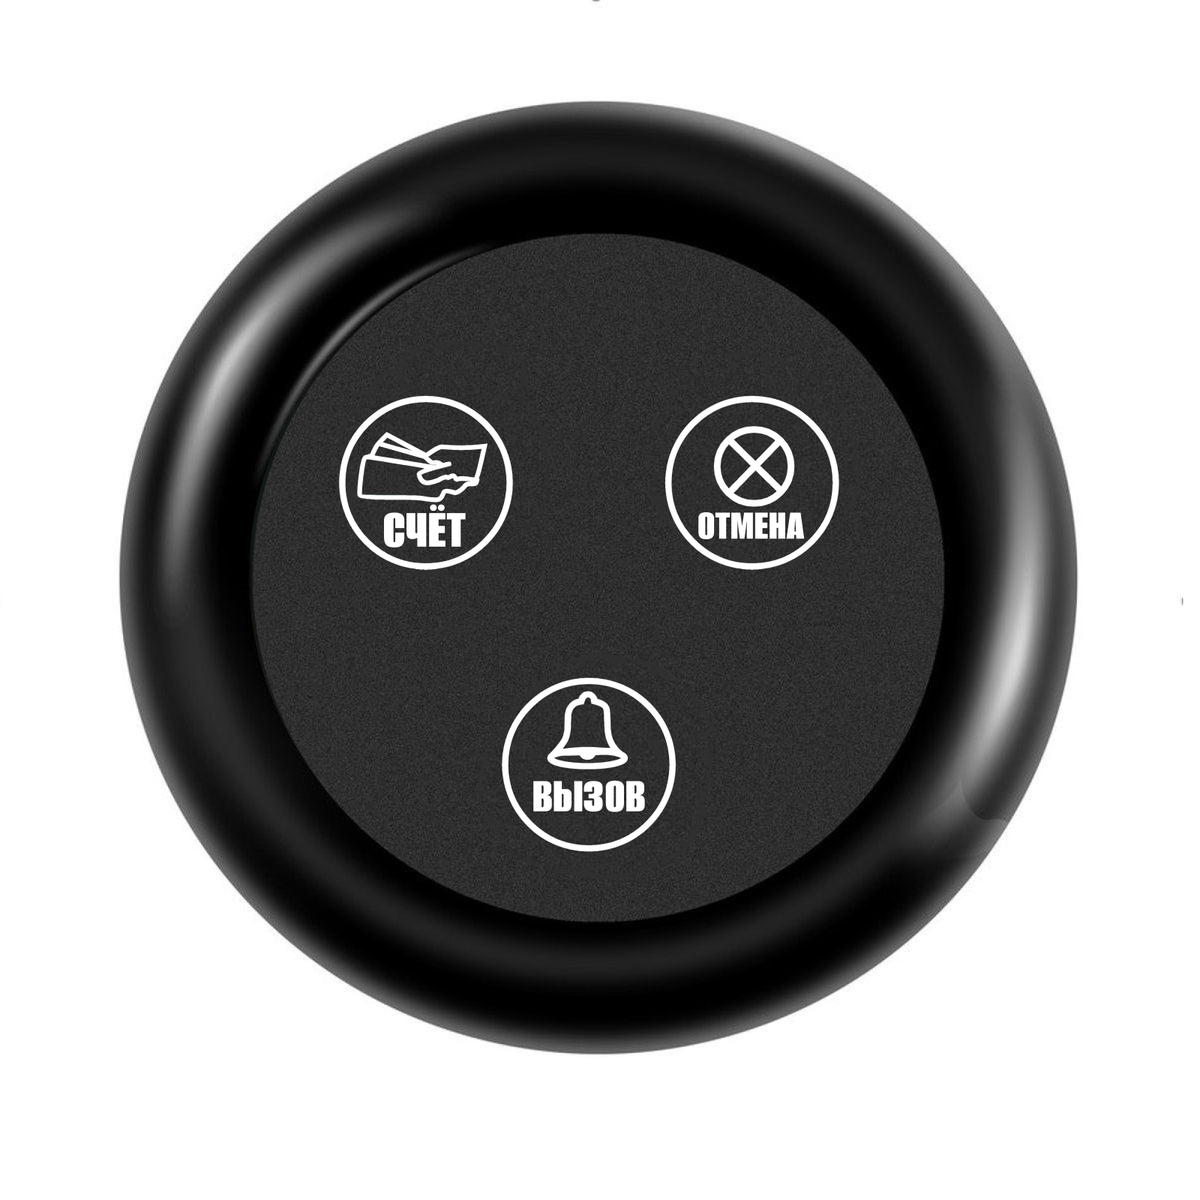 Кнопка вызова Kromix K22008 (вызов, отмена, счёт) IP65 кнопка беспроводного удаленного вызова ewelink кнопка sos emergency